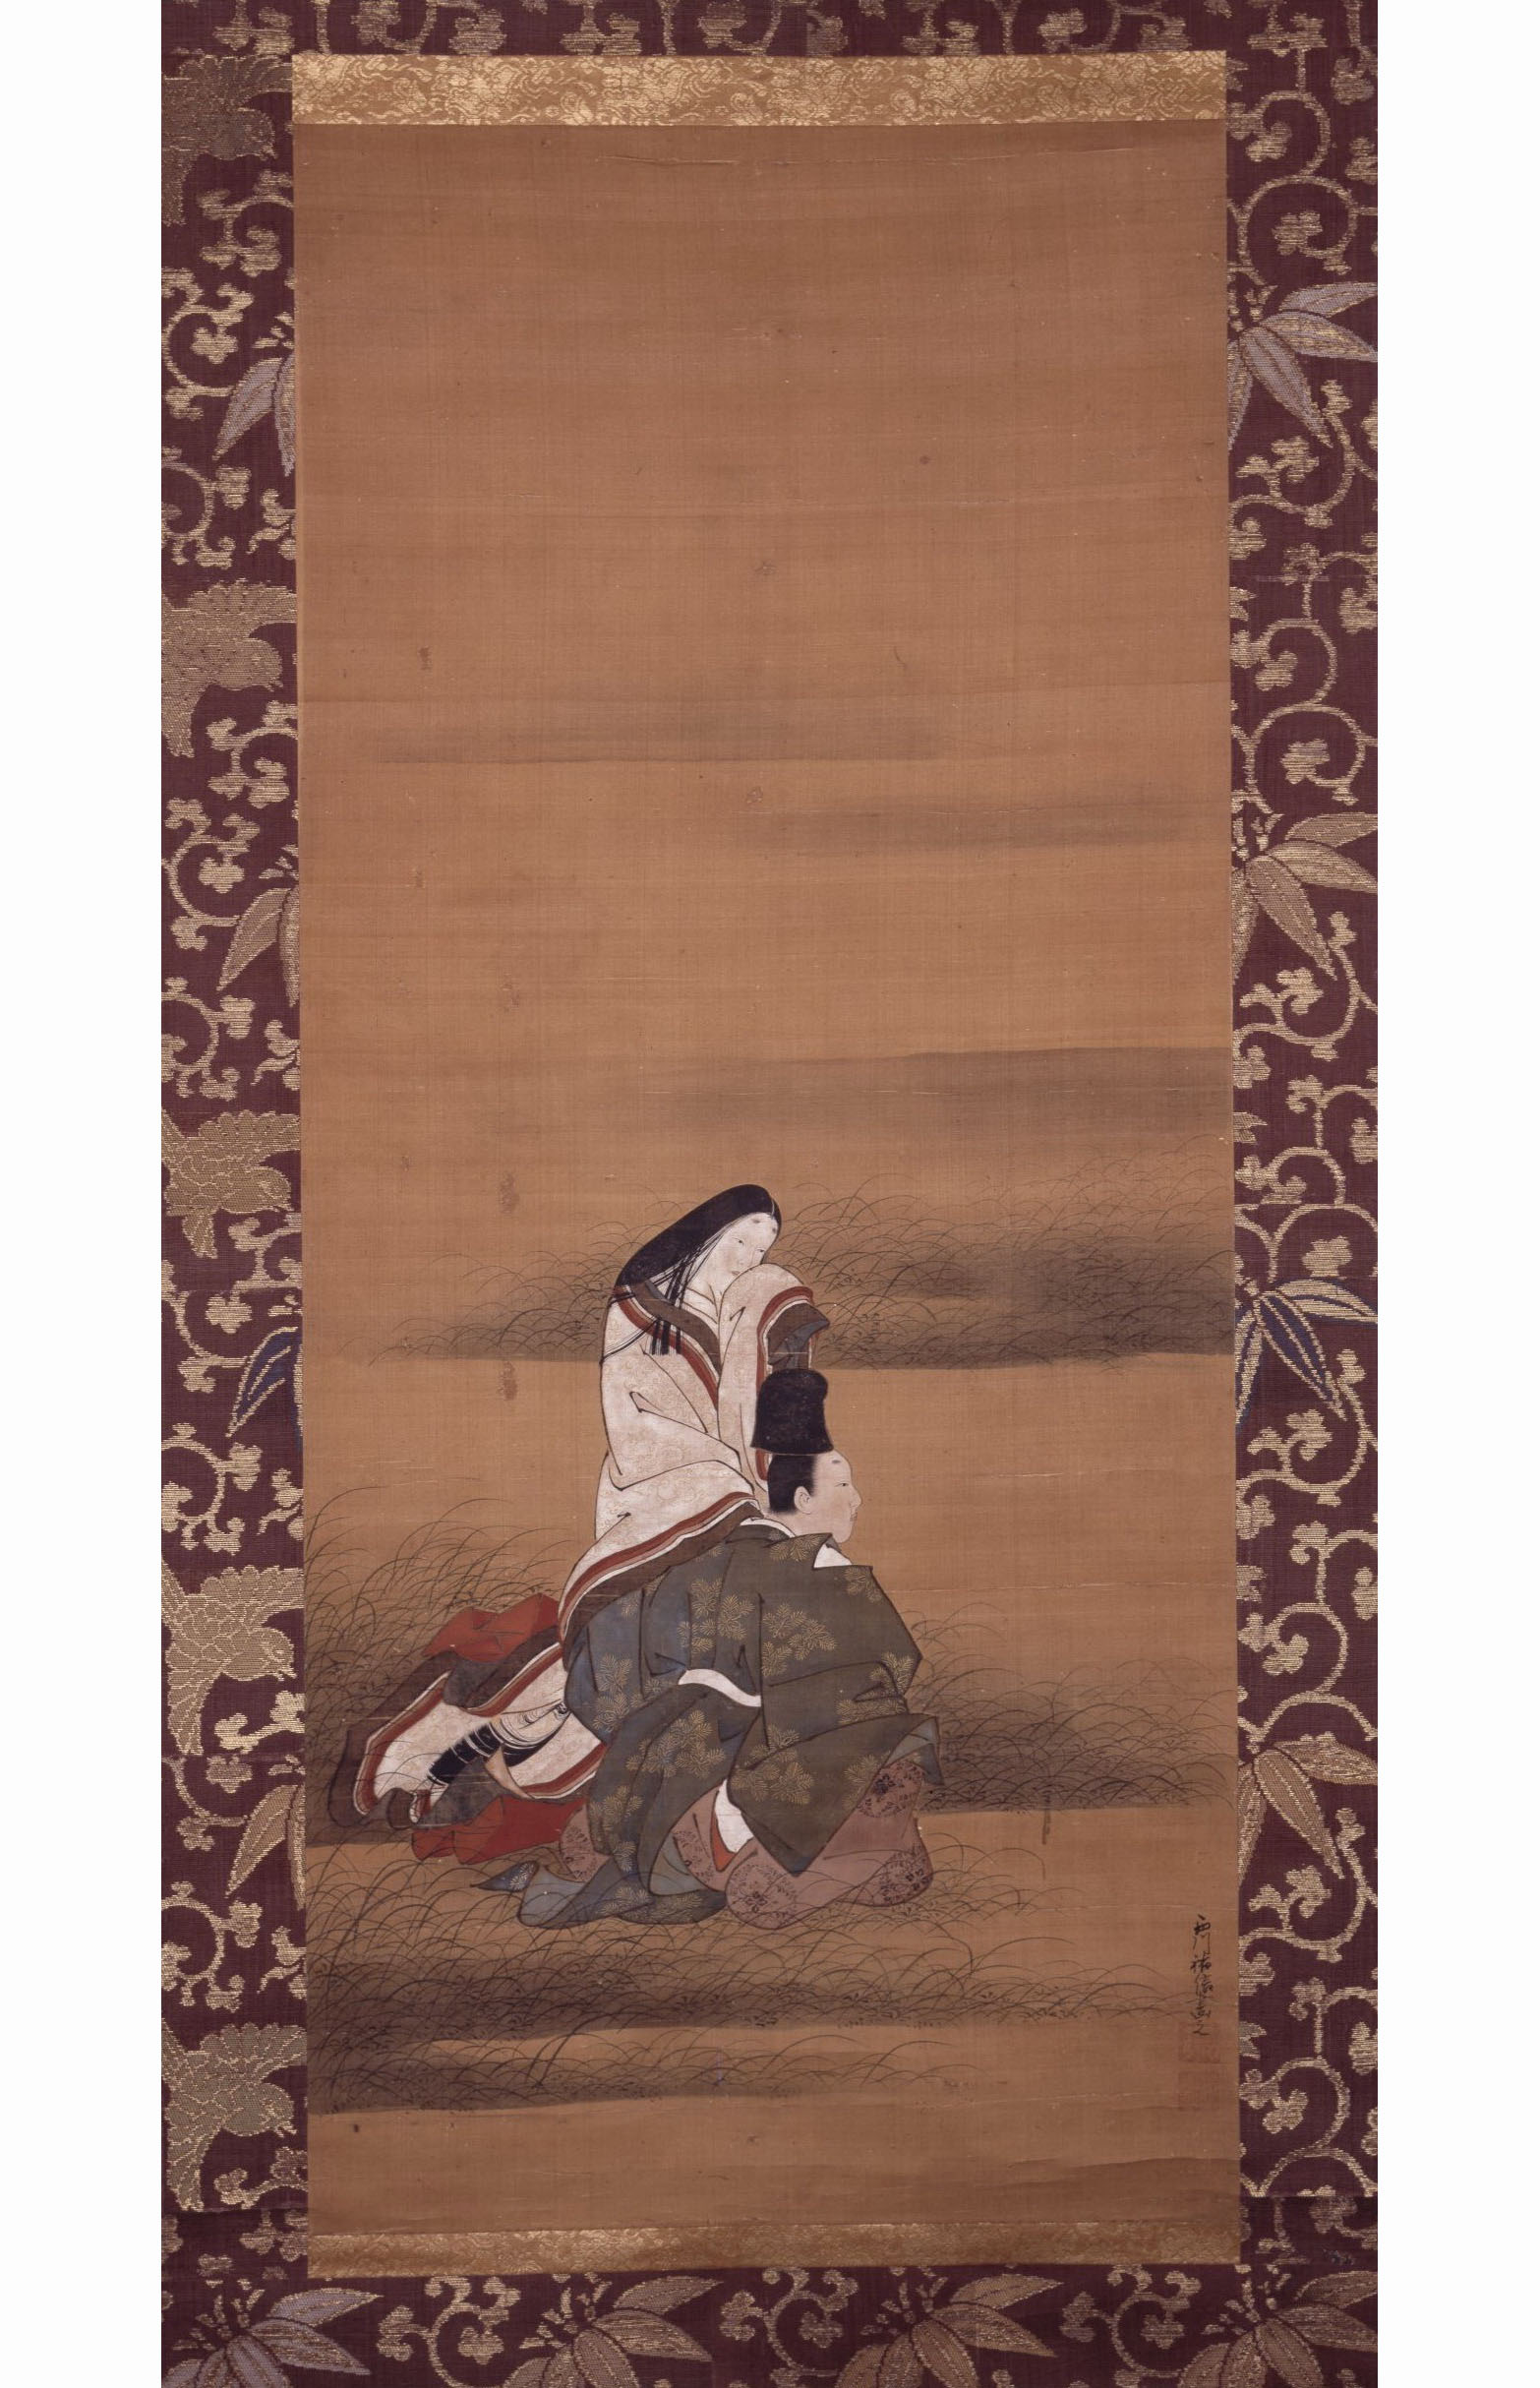 Нисикава Сукэнобу. Сцена из Исэ-моногатари. Влюблённые, скрывающиеся в густой траве. 1736-1748.